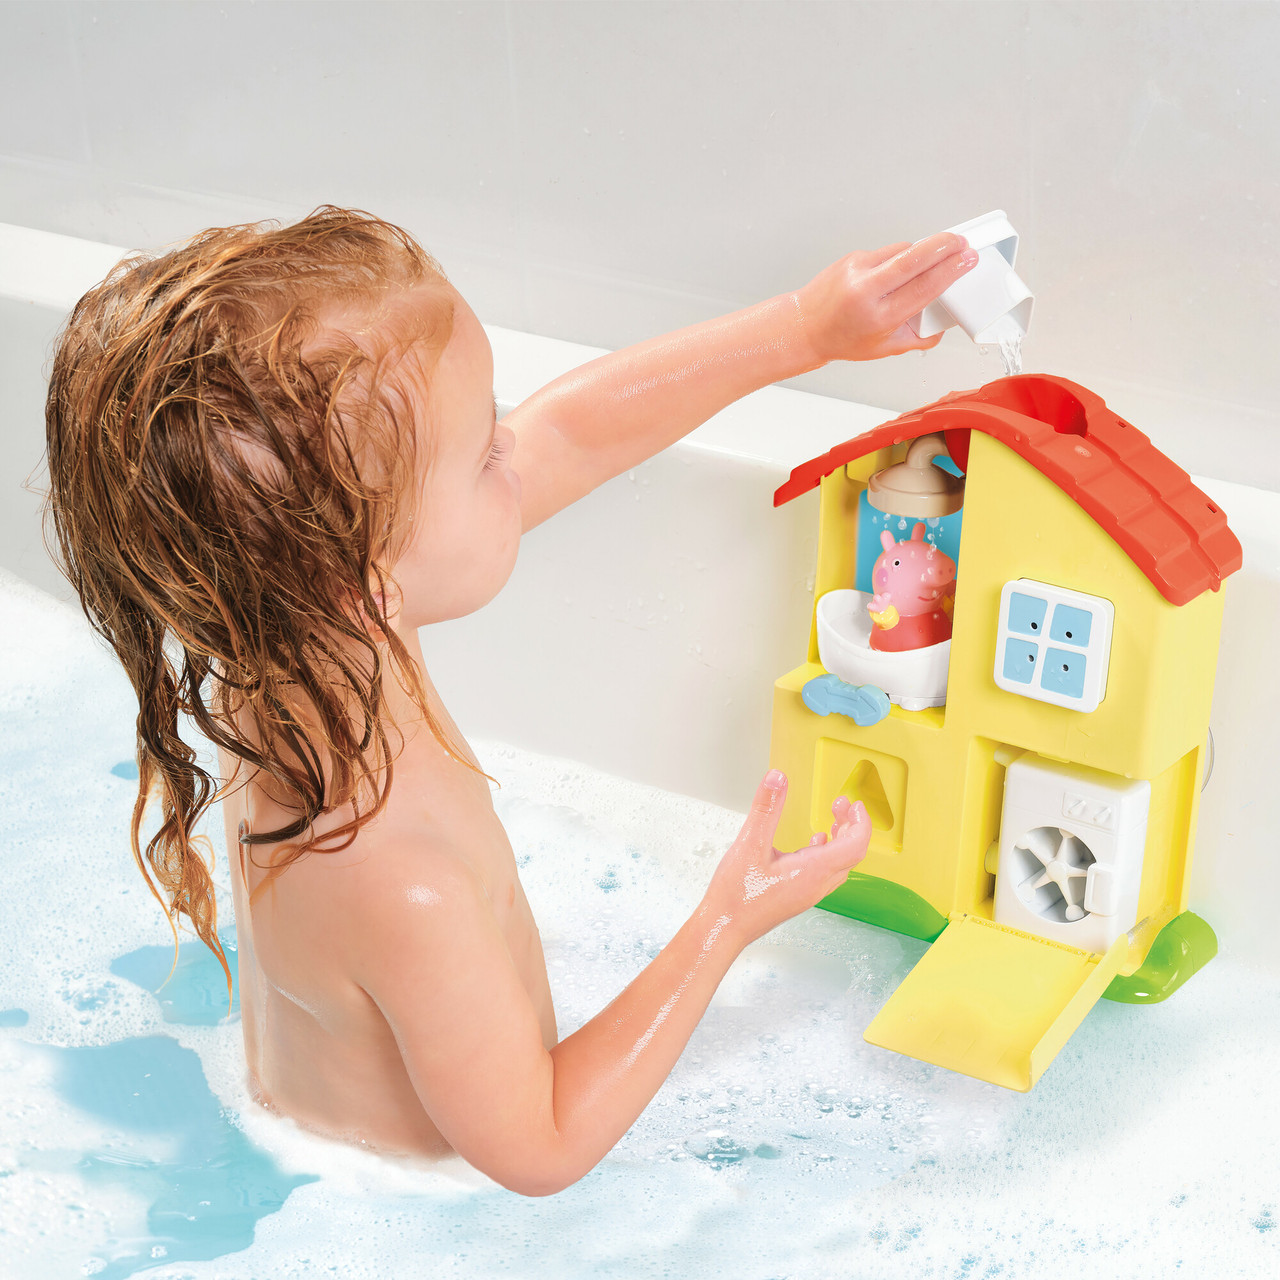 Tomy Toomies Peppa Pig Peppa's House - Juego de juguetes de baño - Centro  de actividades de juego acuático para bebés y niños pequeños de 18 meses en